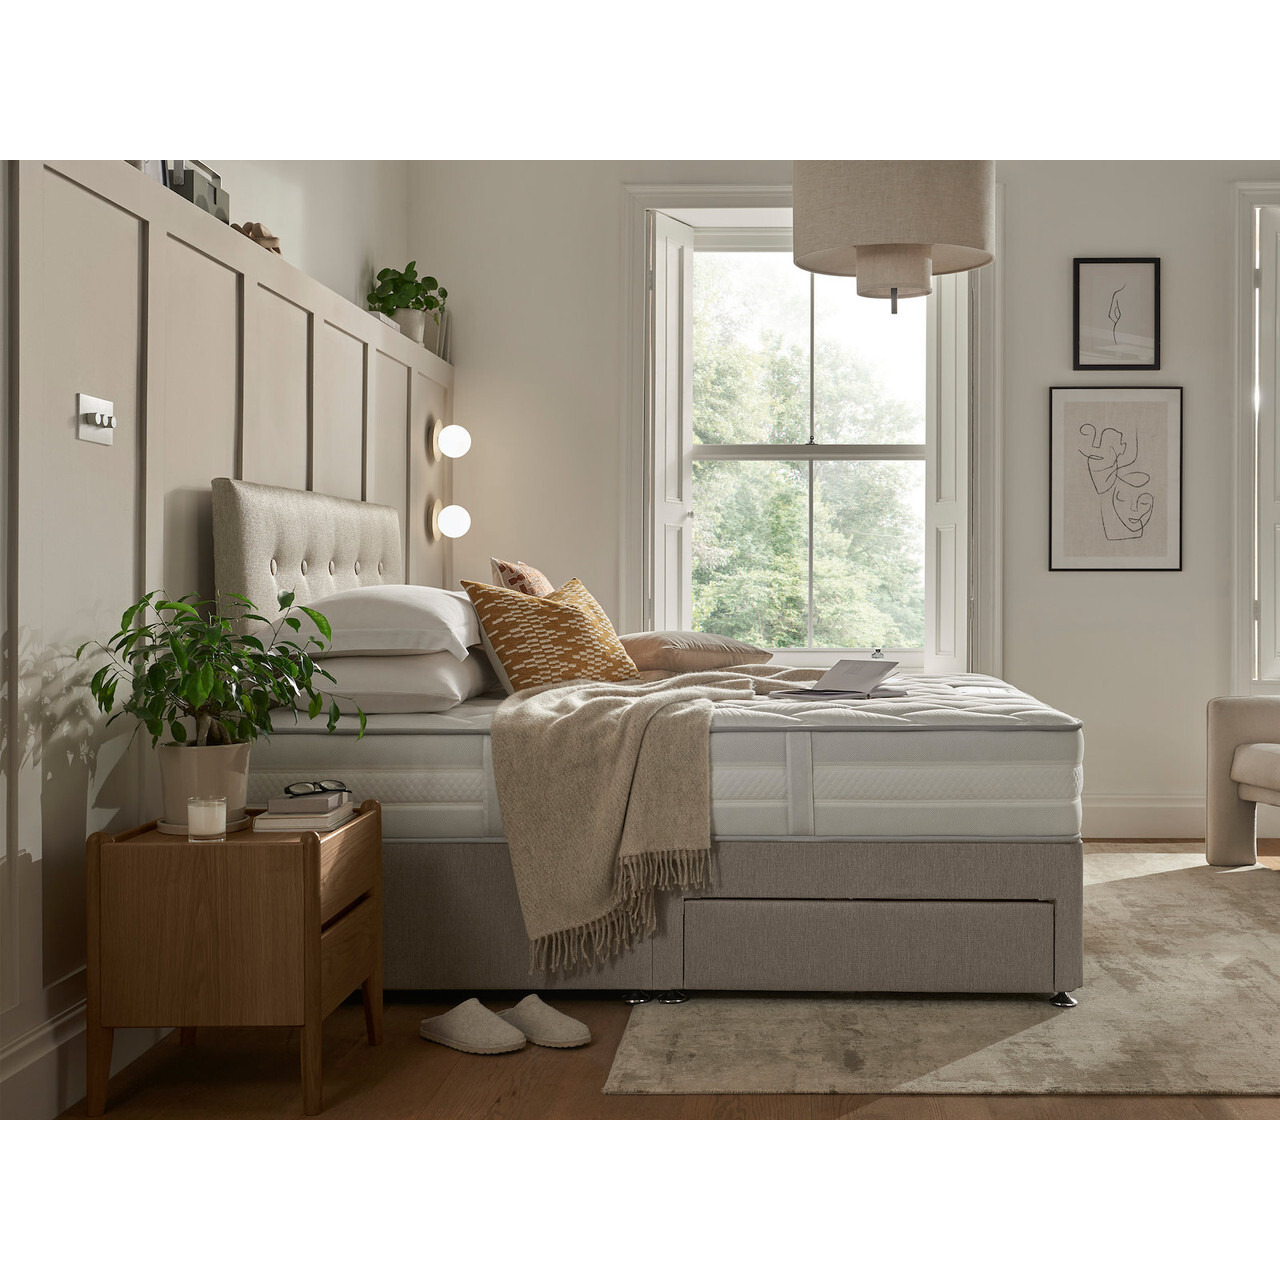 Silentnight 600 Eco Dual Supreme Comfort Divan Bed Set - image 1